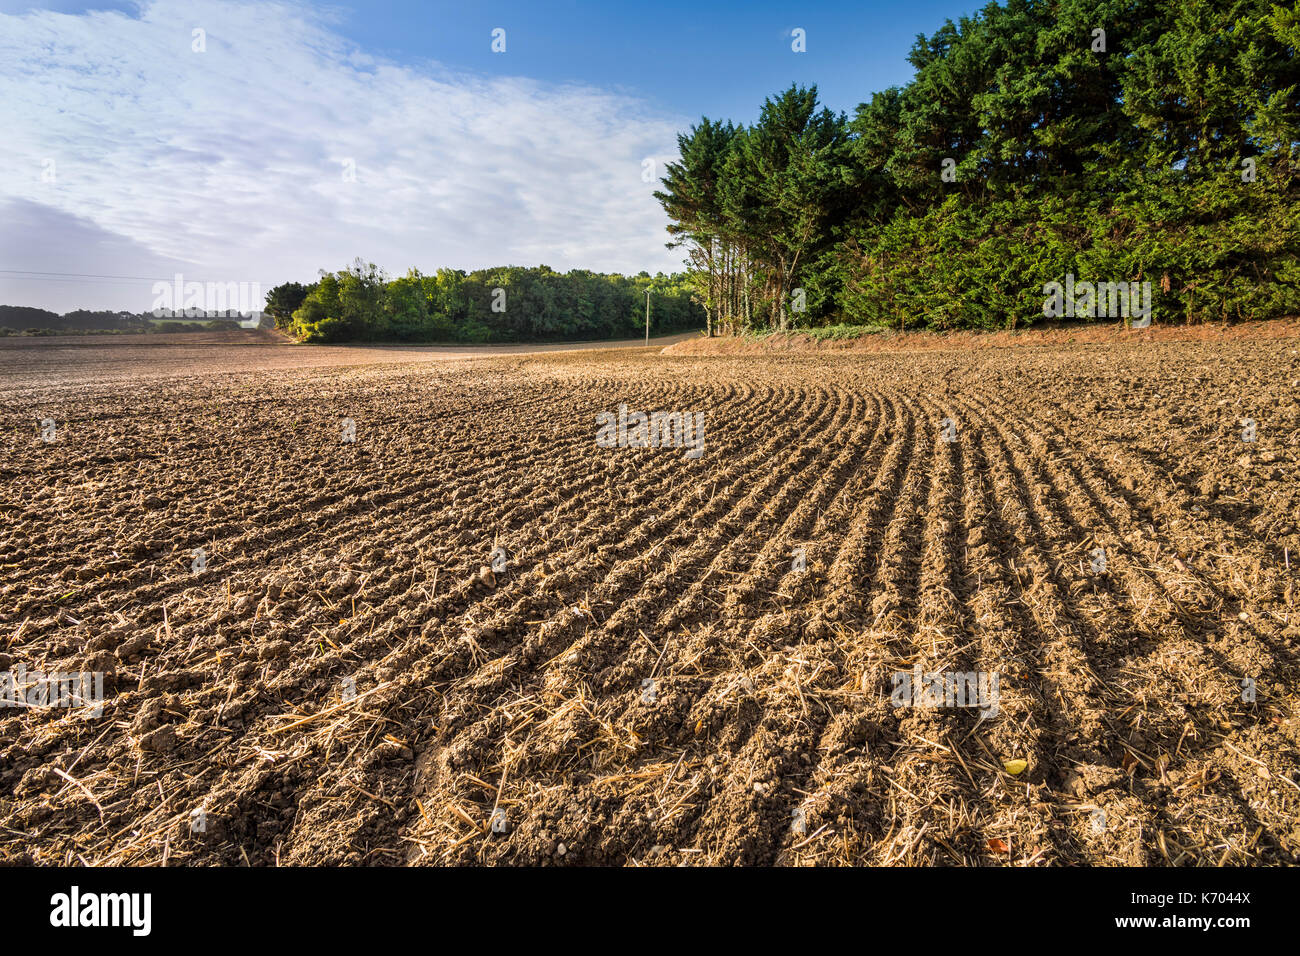 Newly harrowed farm field, France. Stock Photo